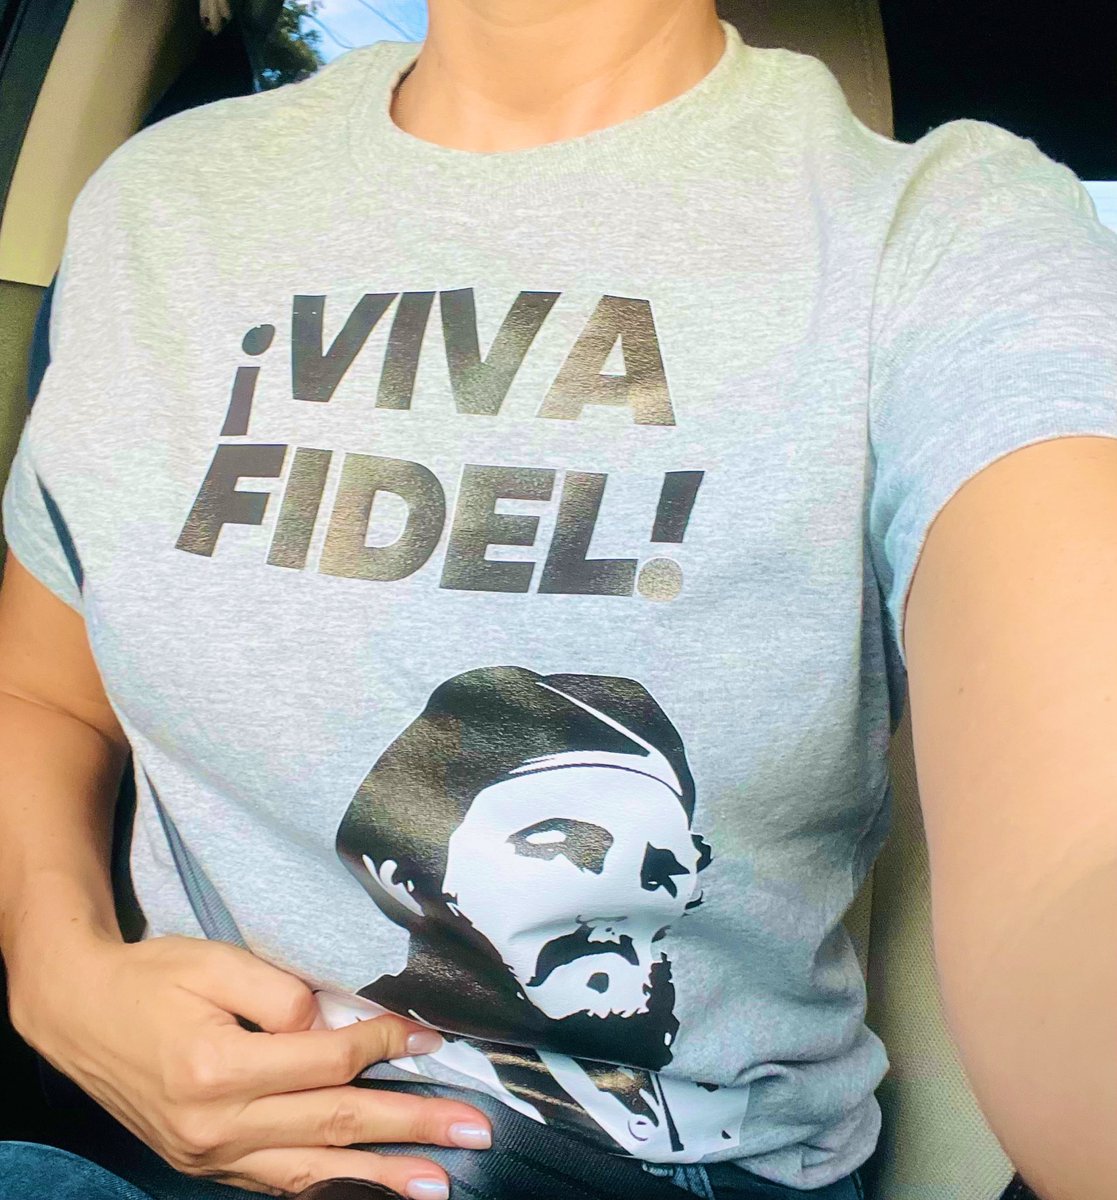 Que viva por siempre Fidel... Y al que le duela, que sufra 🤷🏼‍♀️